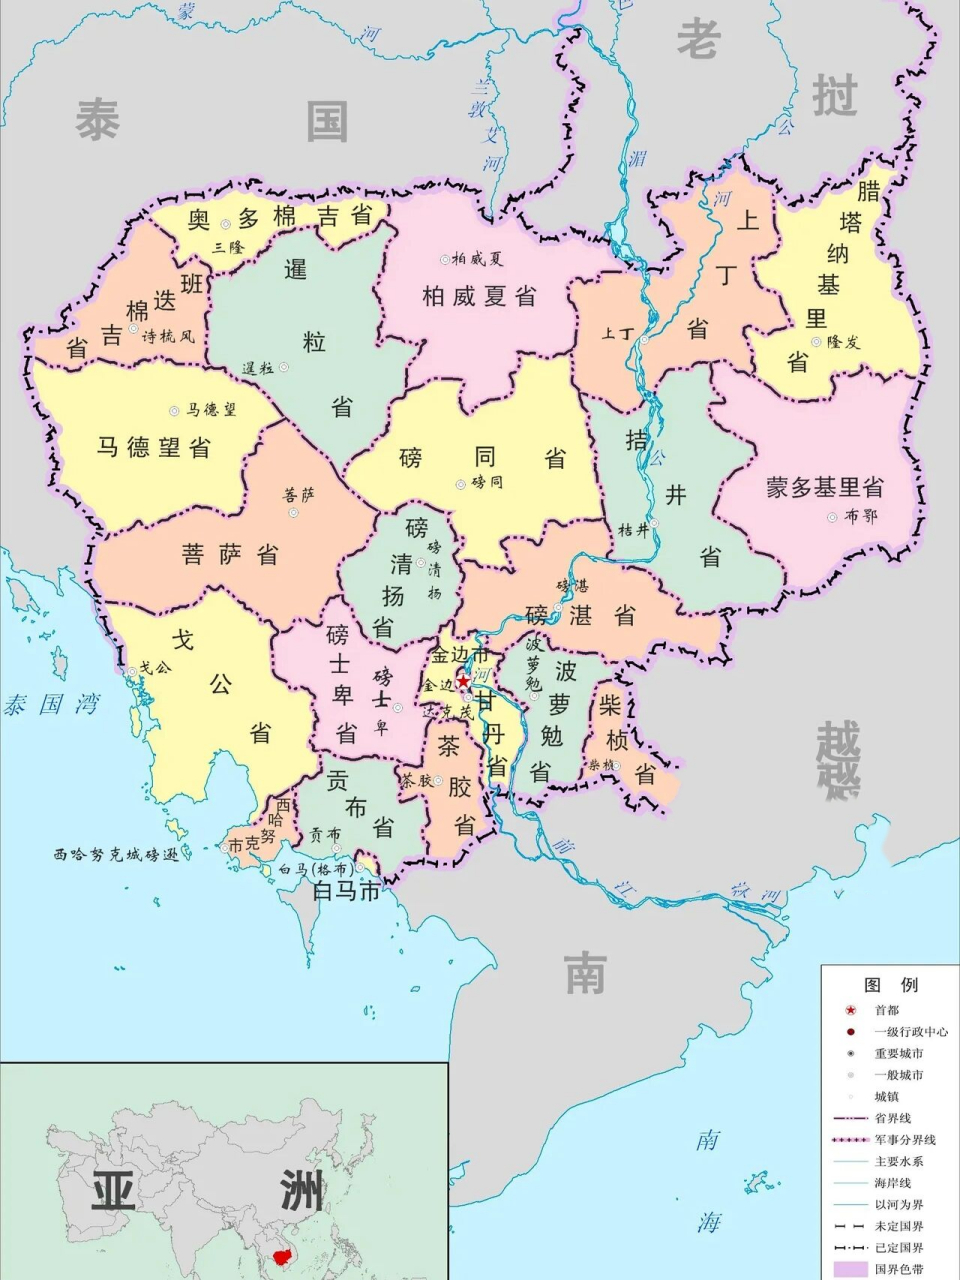 柬埔寨王国区域地图 柬埔寨王国,简称柬埔寨,位于中南半岛,西部及西北